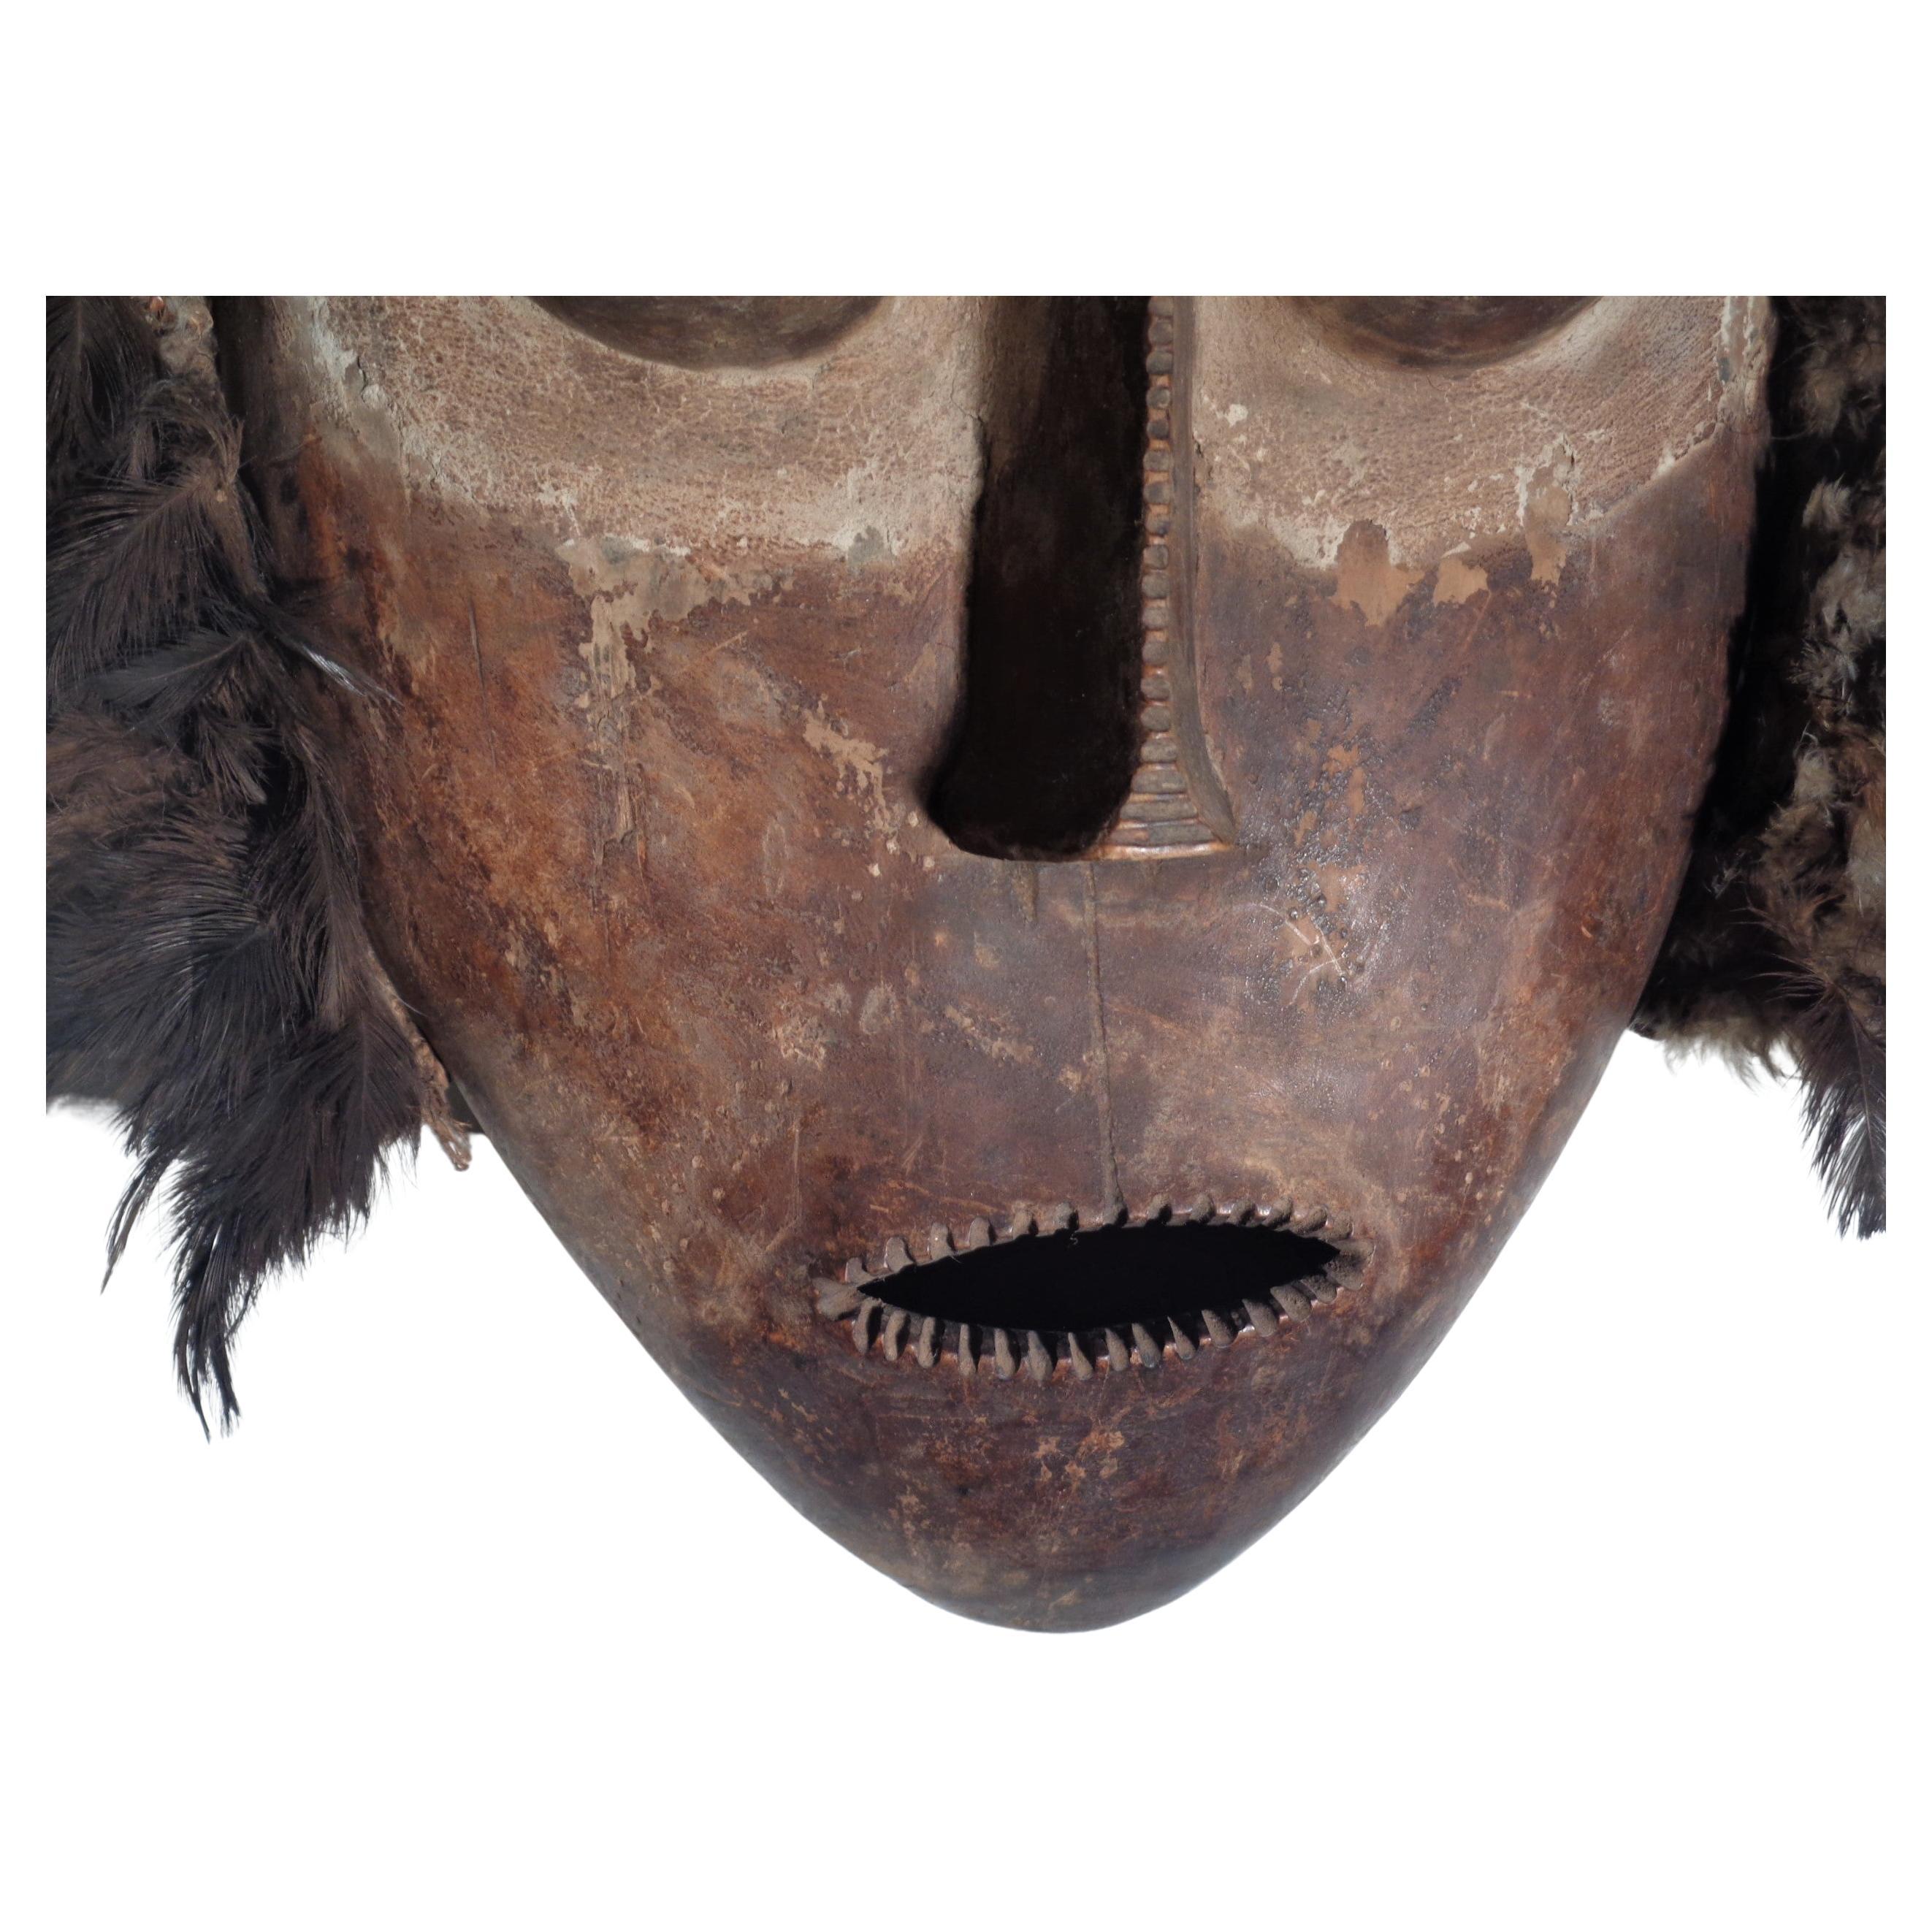 Afrikanische Bembe-Maske mit Federn aus der Kongo-Region in original gealterter pigmentierter Farbe auf Holz. Aus einer privaten Sammlung von Stammeskunst (Inventarnummern auf der Innenseite des Bodens), ca. 1970. Sehen Sie sich alle Bilder an und